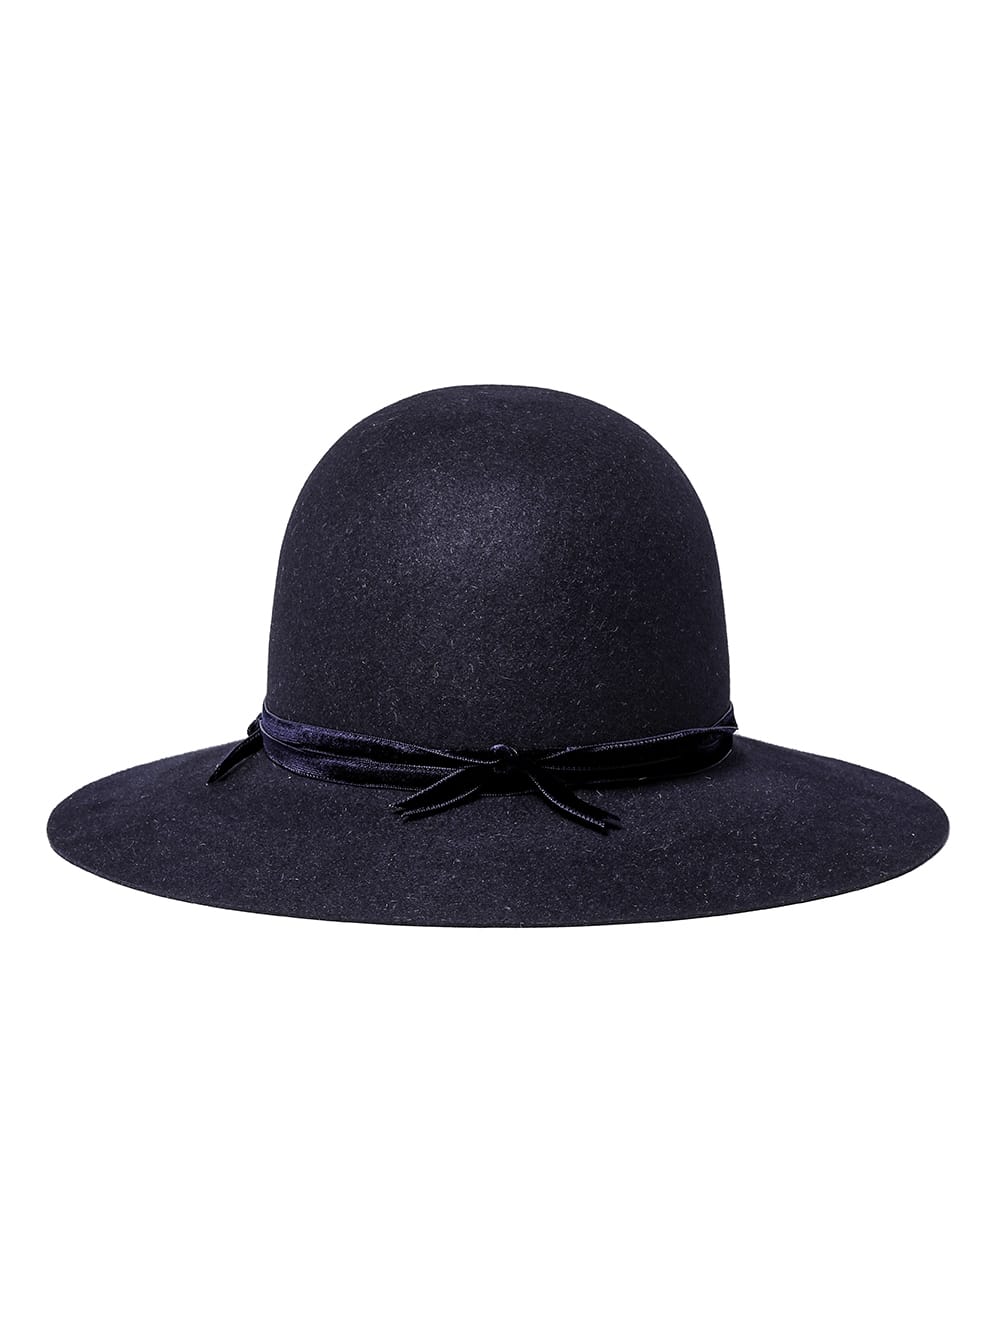 bowler hat./velvet ribbon.